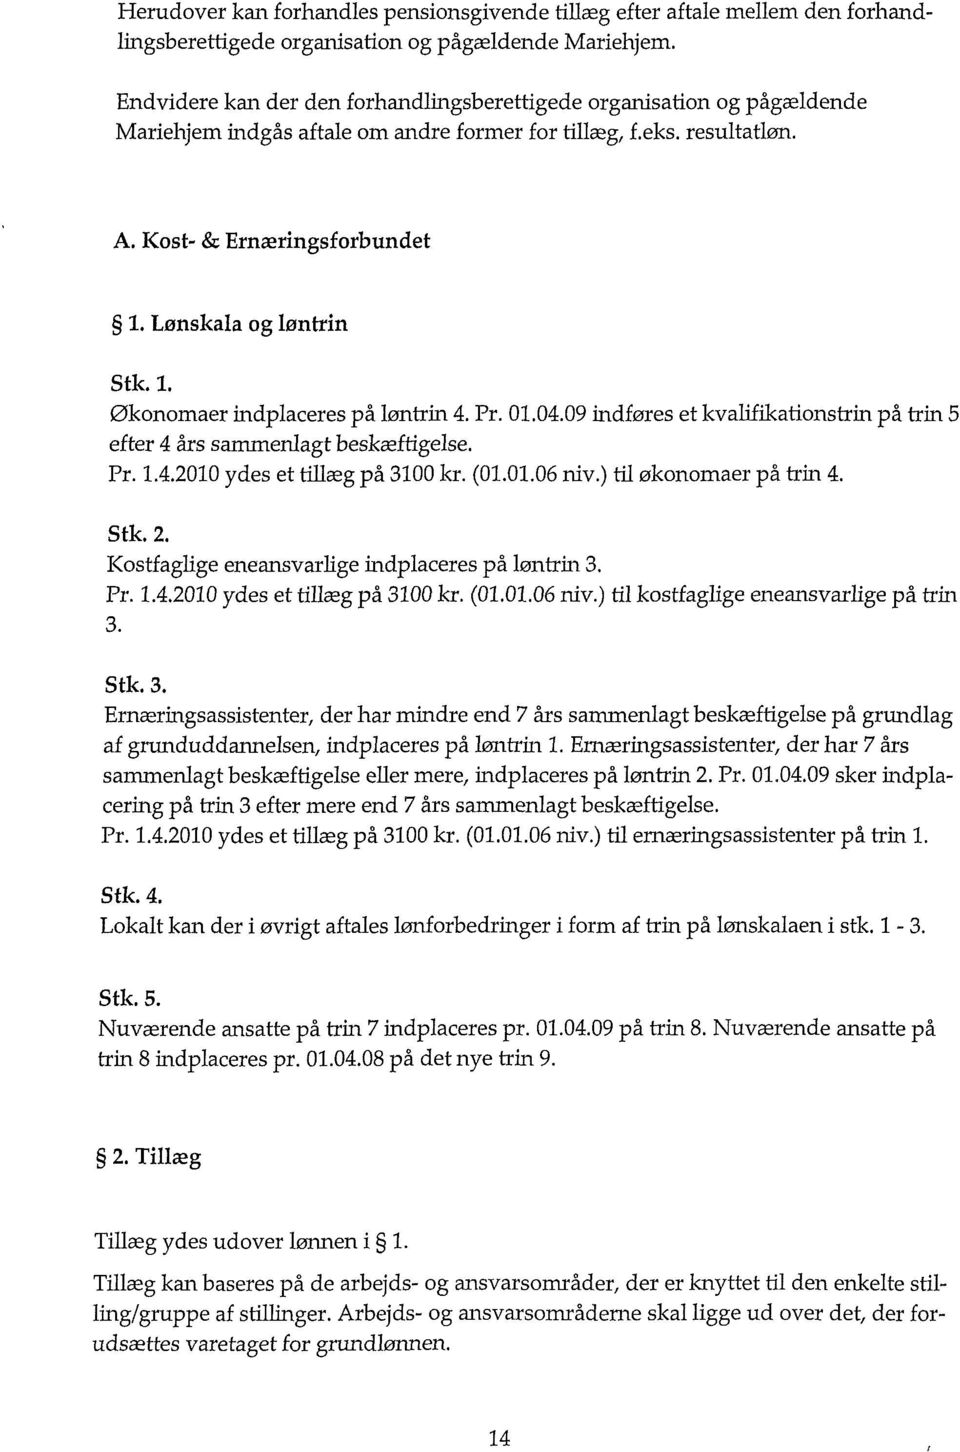 Lønskala og løntrin Stk. 1. Økonomaer indplaceres på løntrin 4. Pr. 01.04.09 indføres et kvalifikationstrin på trin 5 efter 4 års sammenlagt beskæftigelse. Pr. 1.4.2010 ydes et tillæg på 3100 kr. (01.